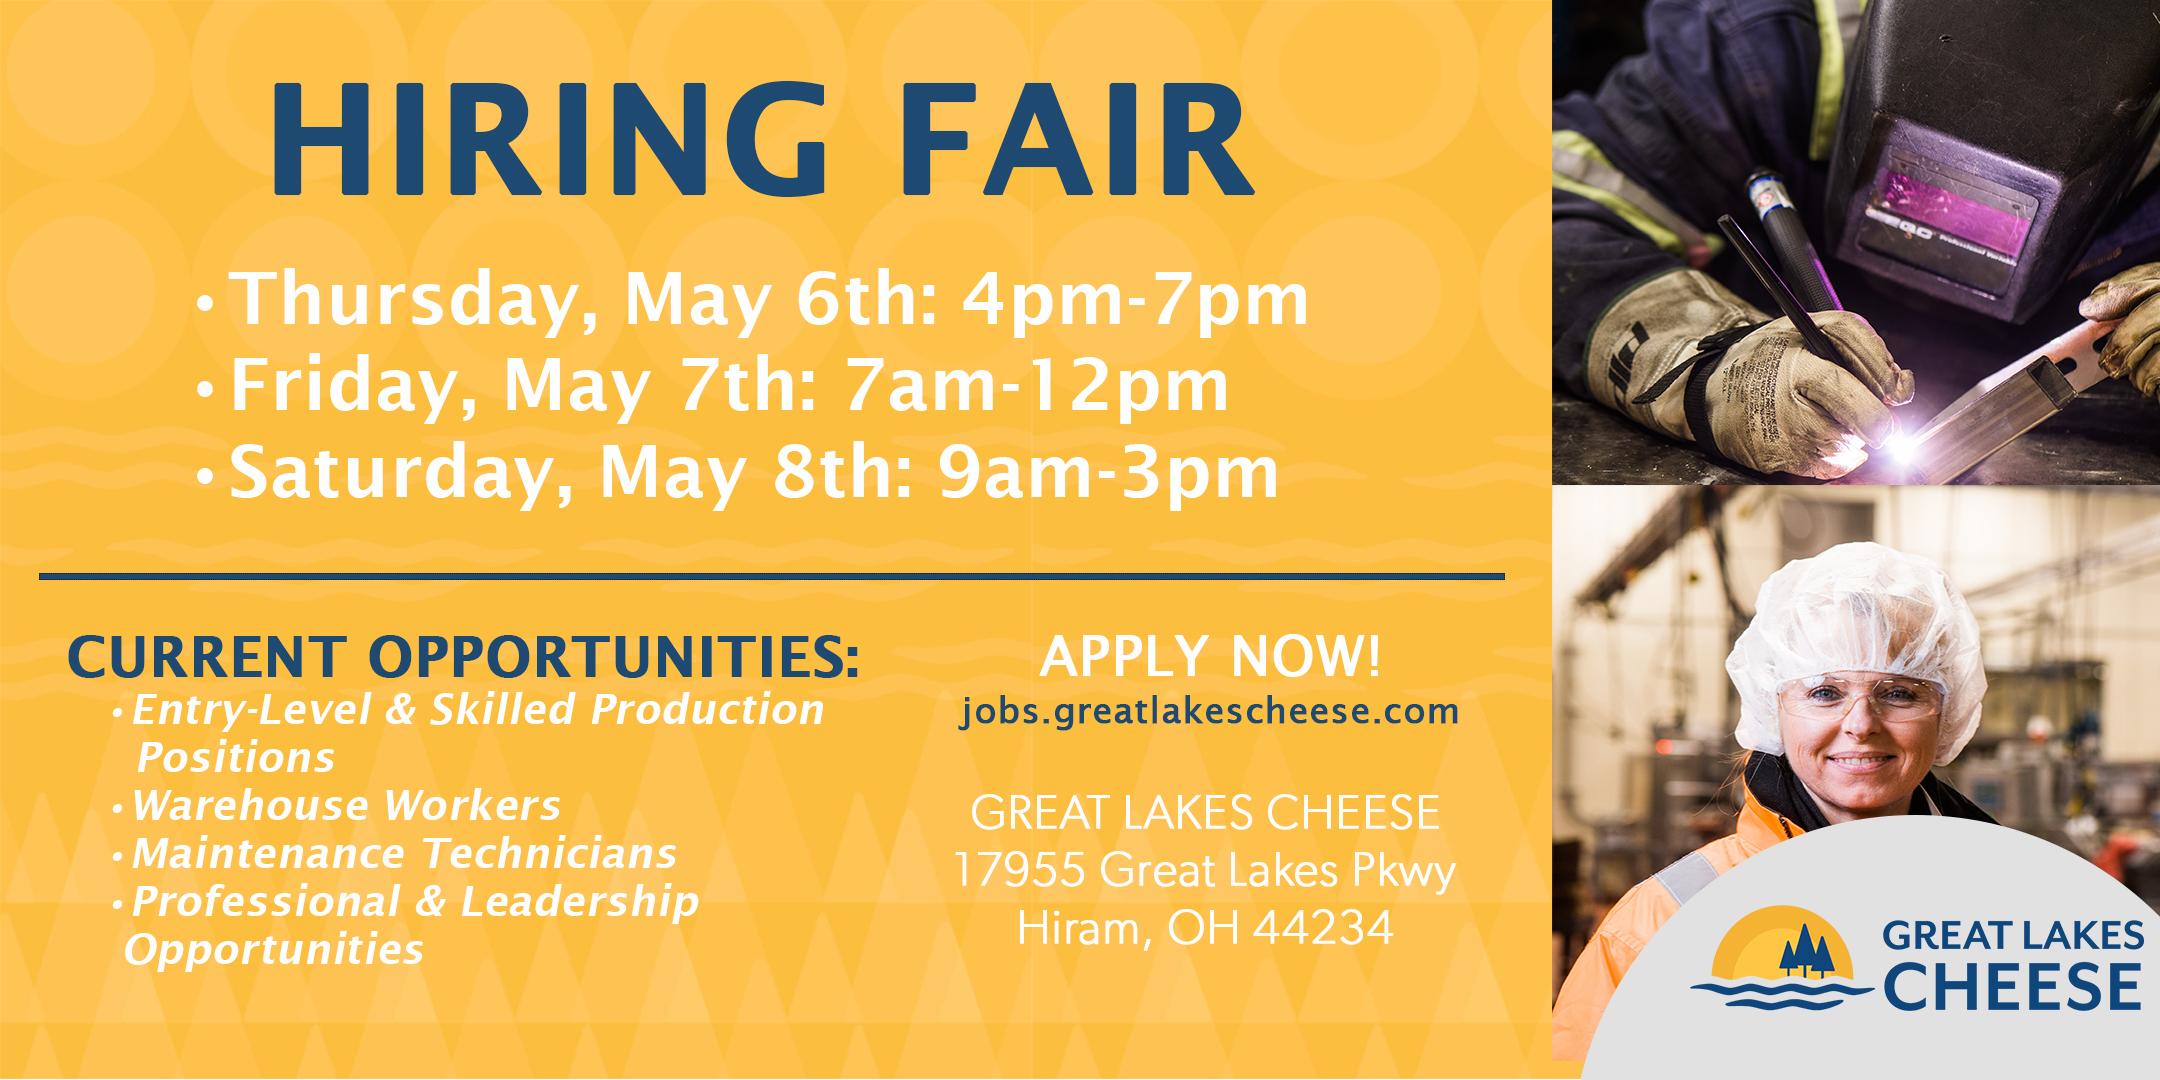 Great Lakes Cheese Career Fair, Hiram OH